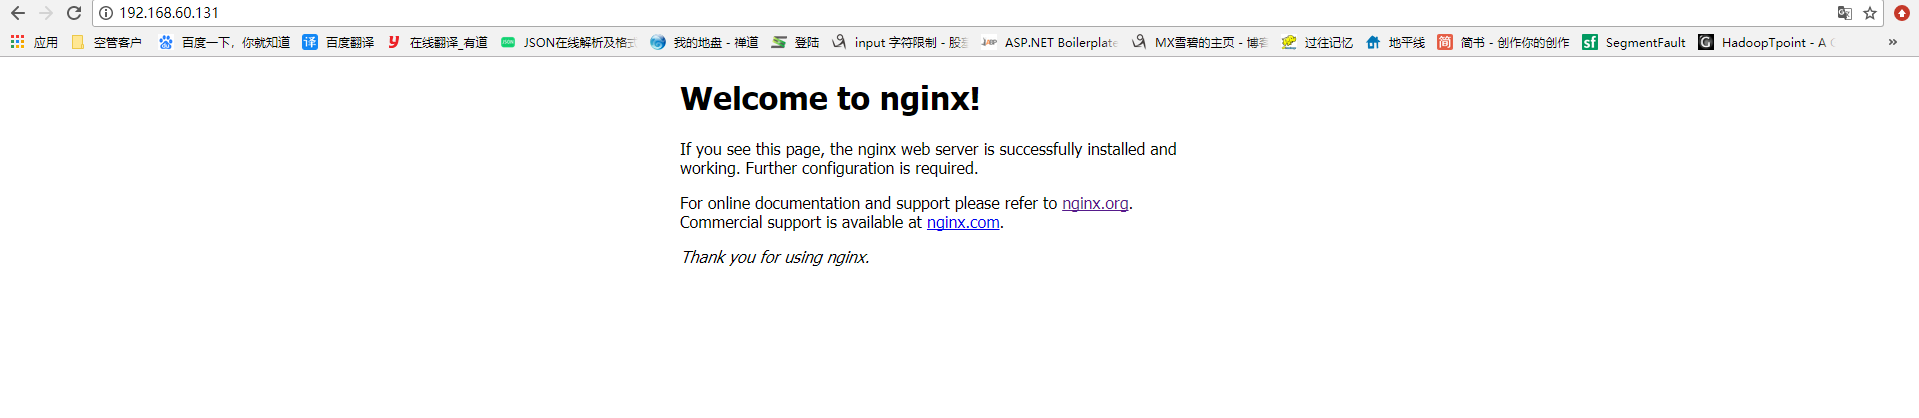 Nginx 安装及配置、负载均衡https网站及转发后页面js、css等路径找不到问题、更换证书导致问题解决第1张